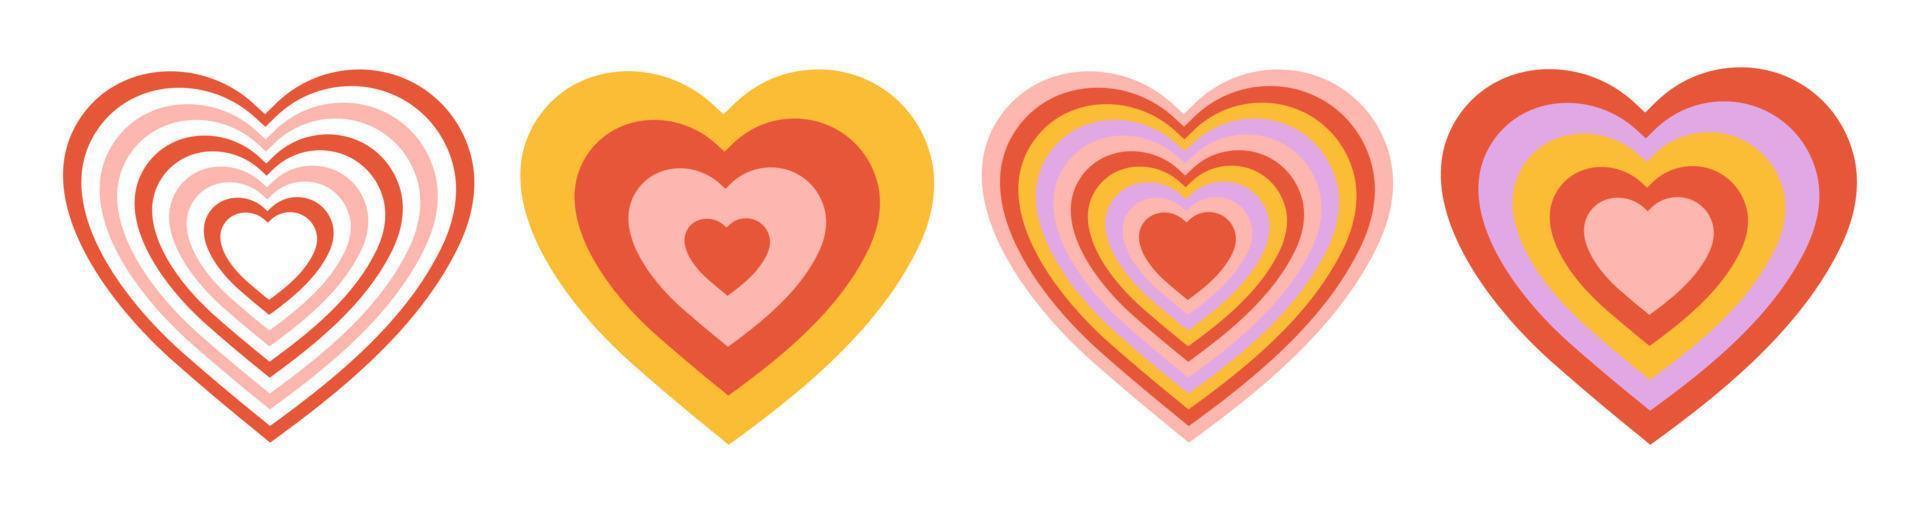 vector reeks tunnel romantisch harten. retro kleurrijk achtergrond in stijl jaren 70, jaren 80. concentrisch harten geïsoleerd pictogrammen.